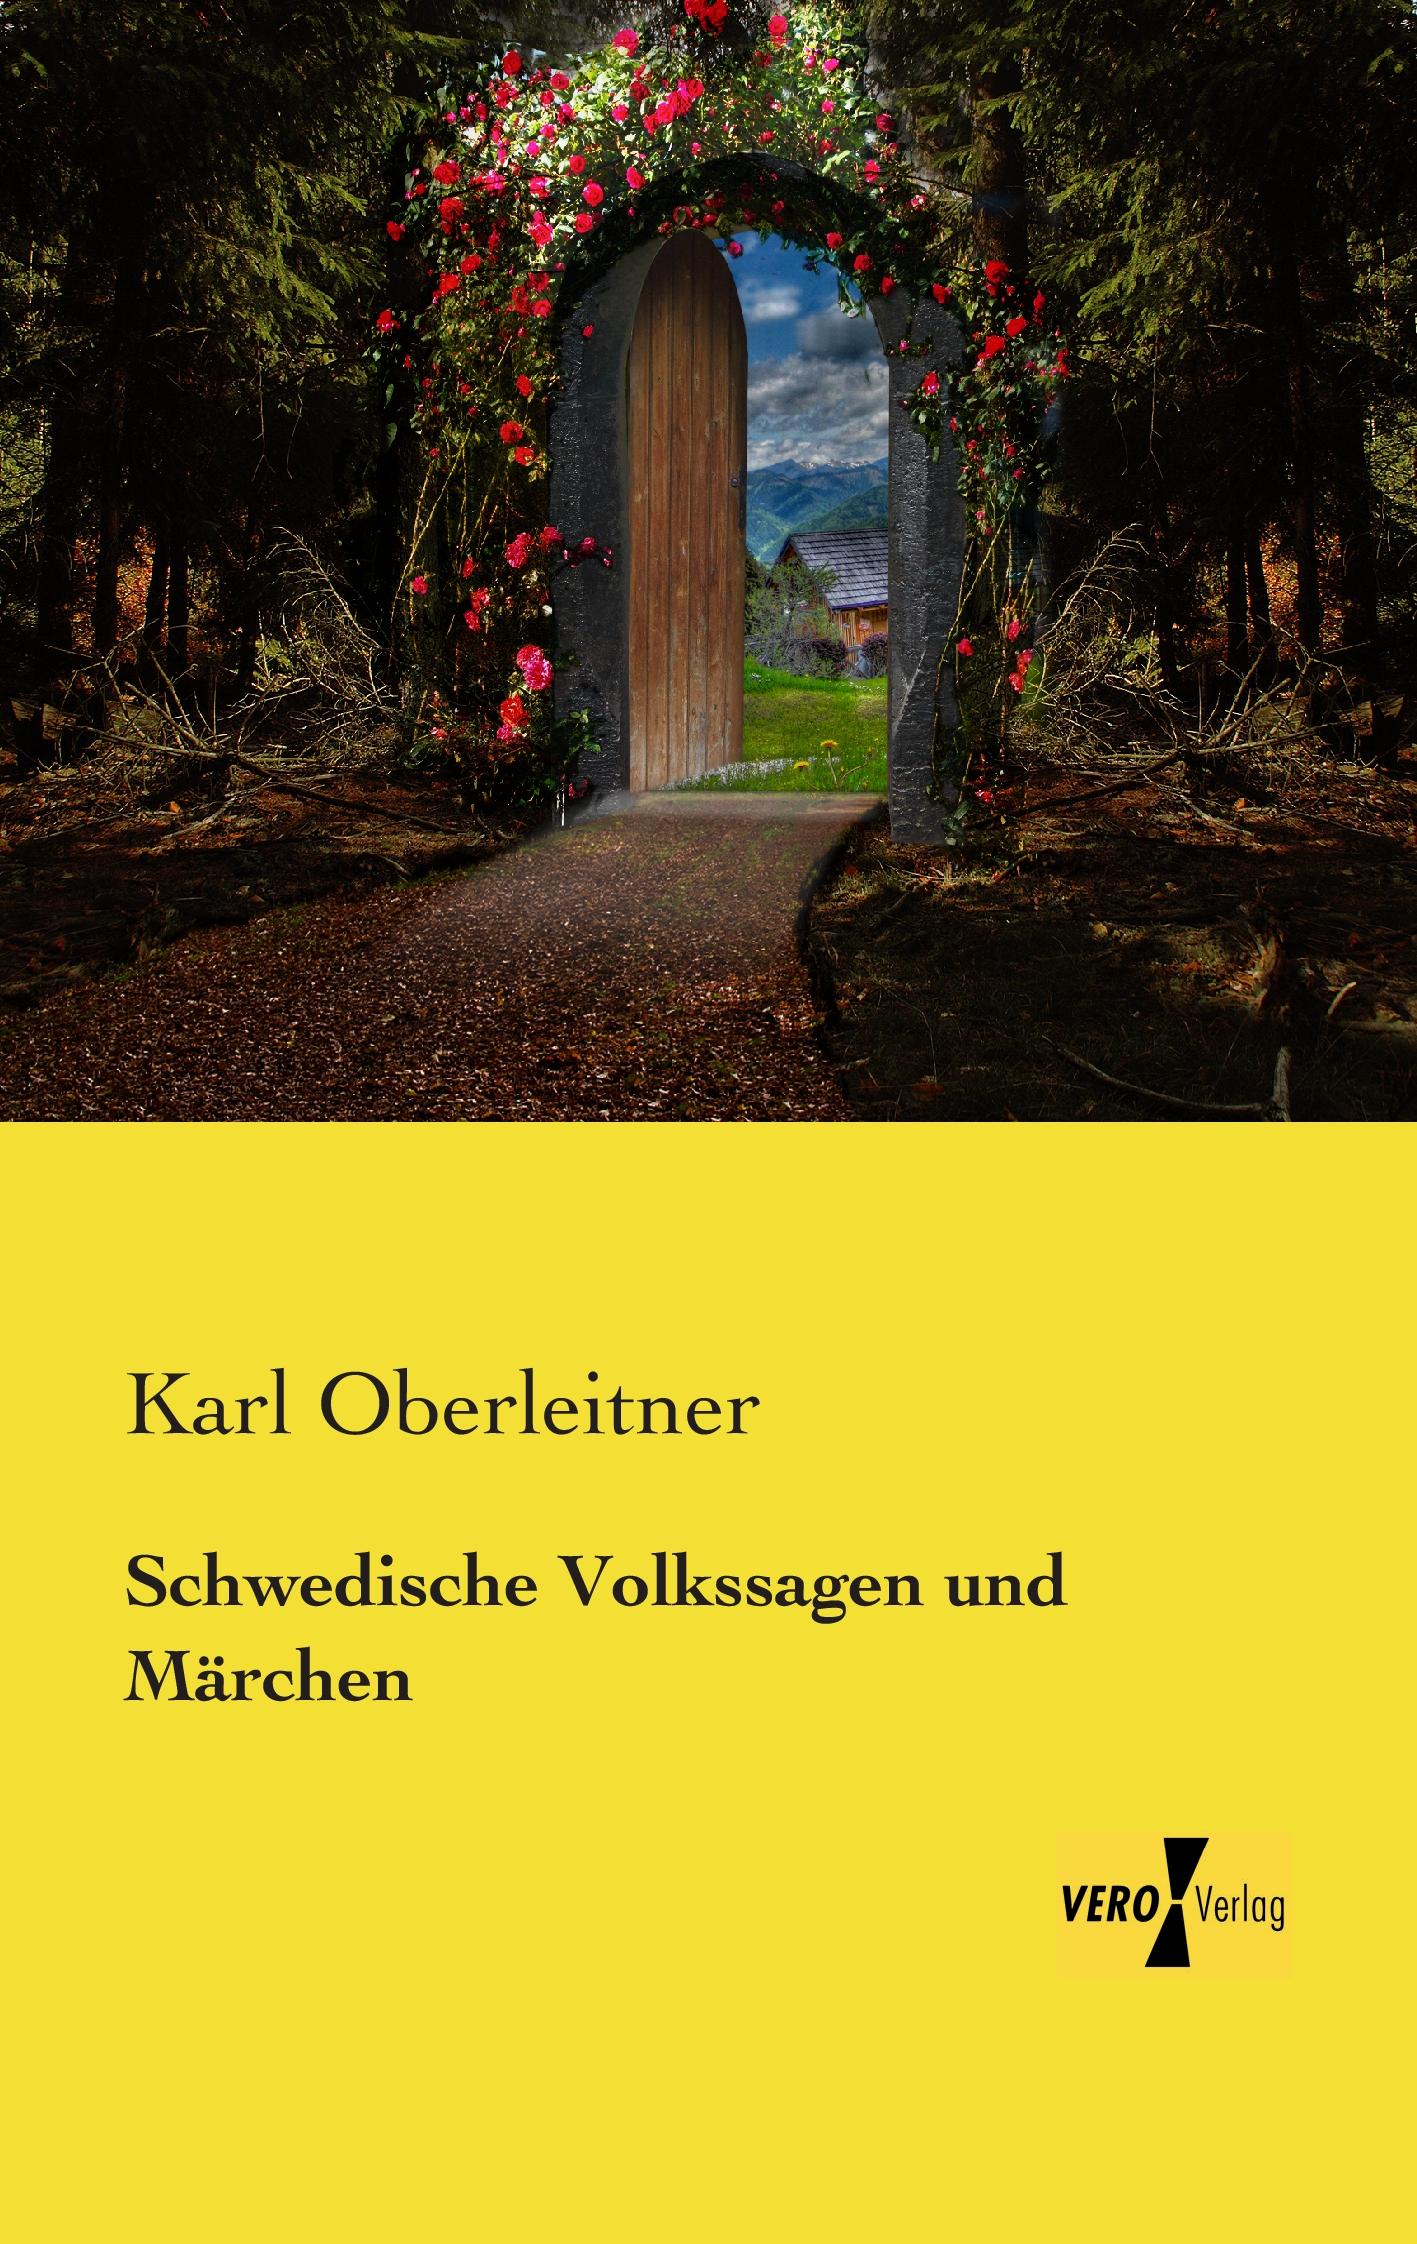 Schwedische Volkssagen und Märchen / Karl Oberleitner / Taschenbuch / Paperback / 316 S. / Deutsch / 2019 / Vero Verlag / EAN 9783957387271 - Oberleitner, Karl